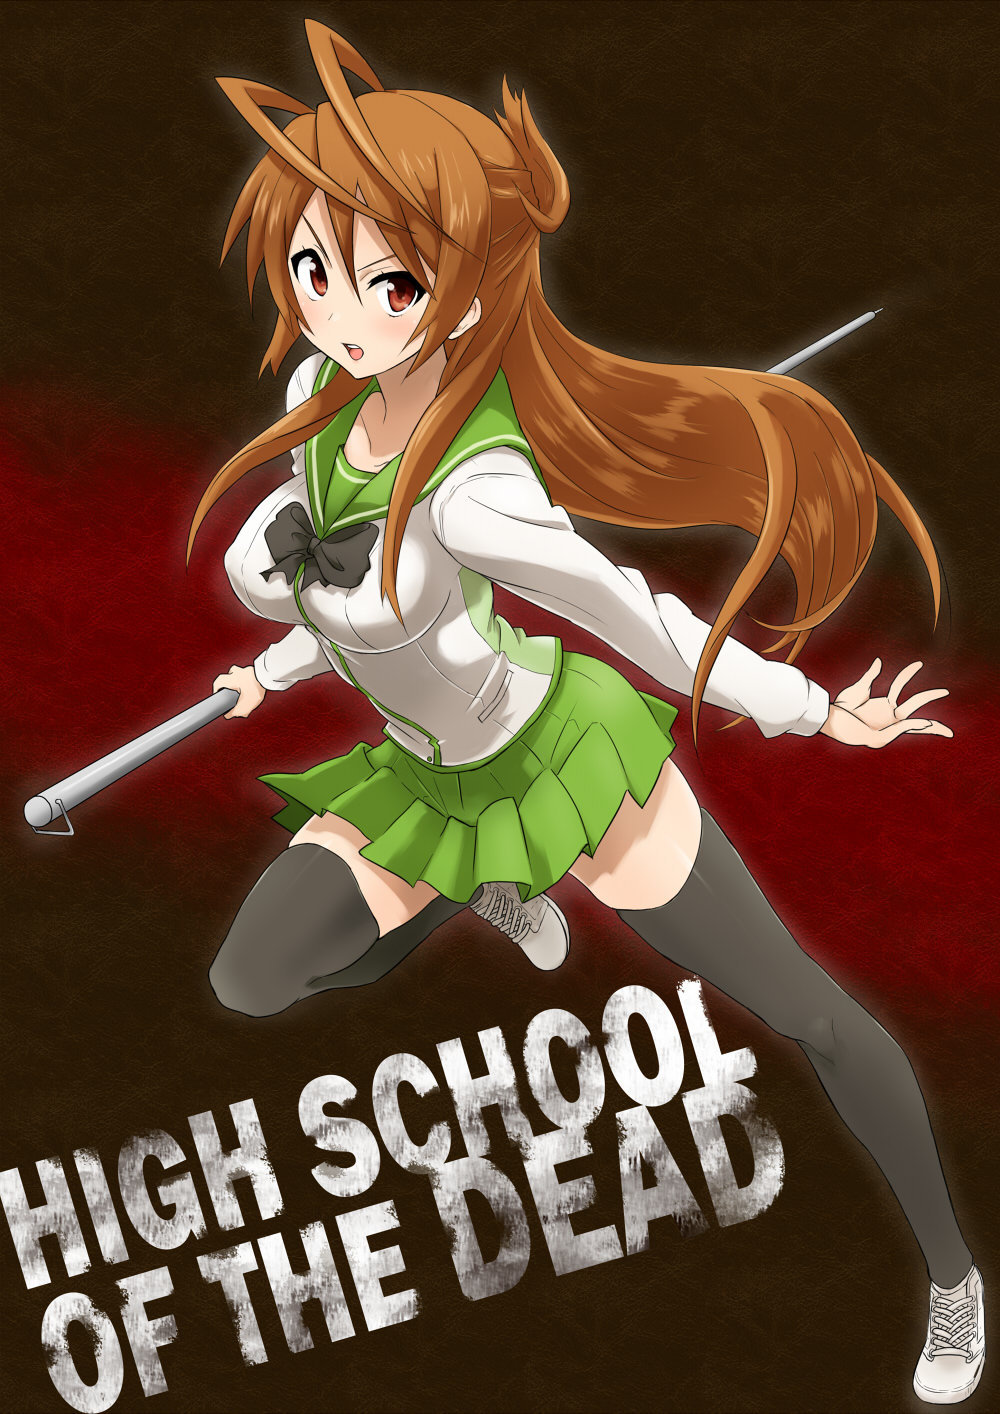 Rei-highschool-of-the-dead-16513523-1000-1414.jpg